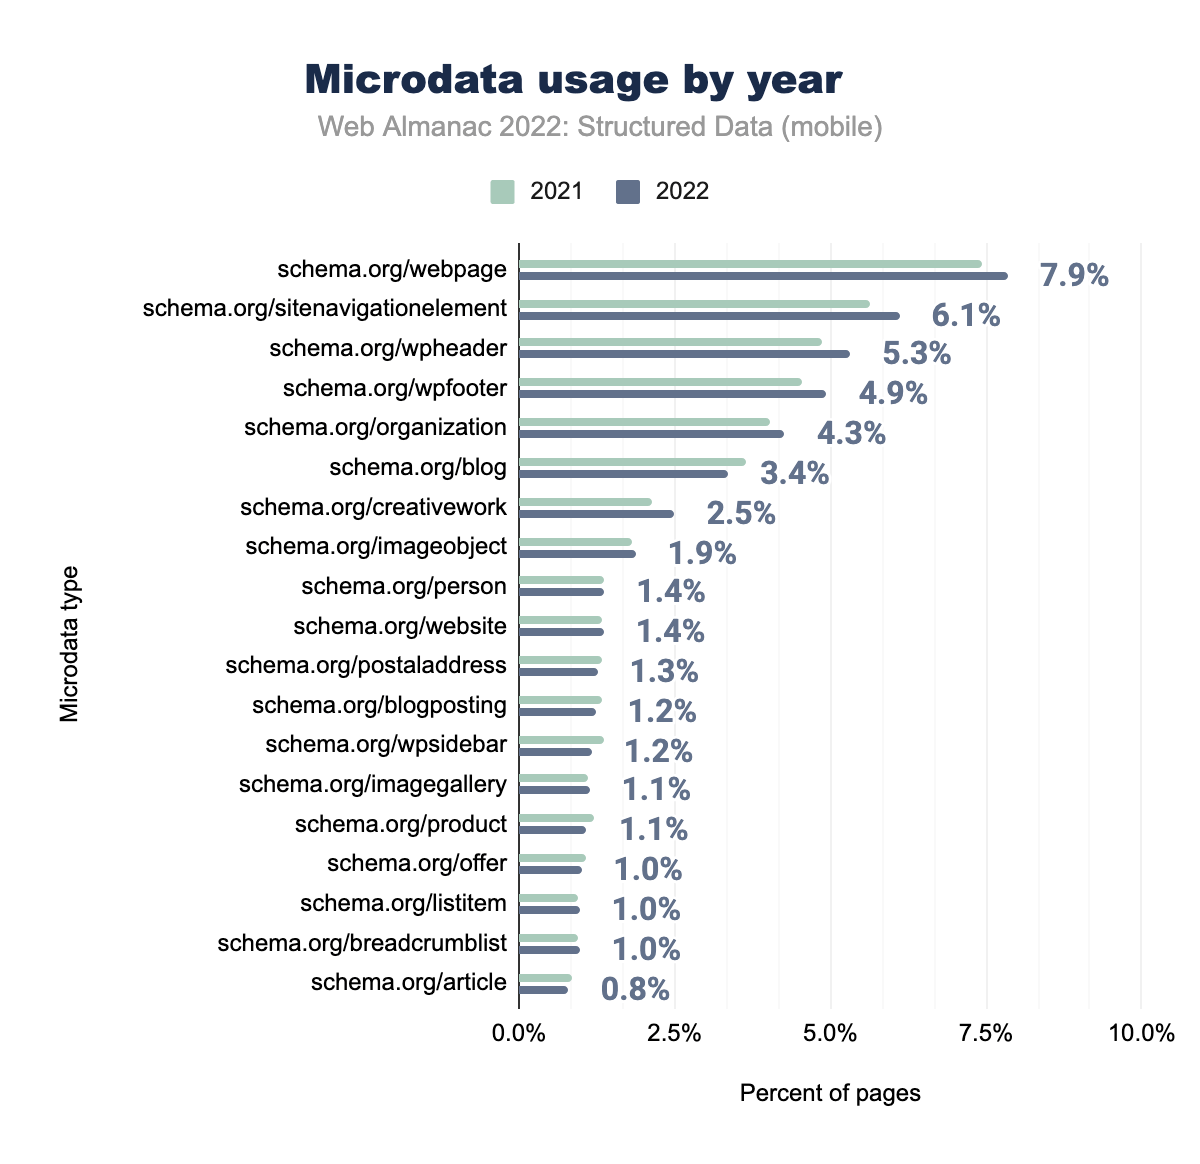 Utilizzo per anno dei Microdata usage (dispositivi mobili)